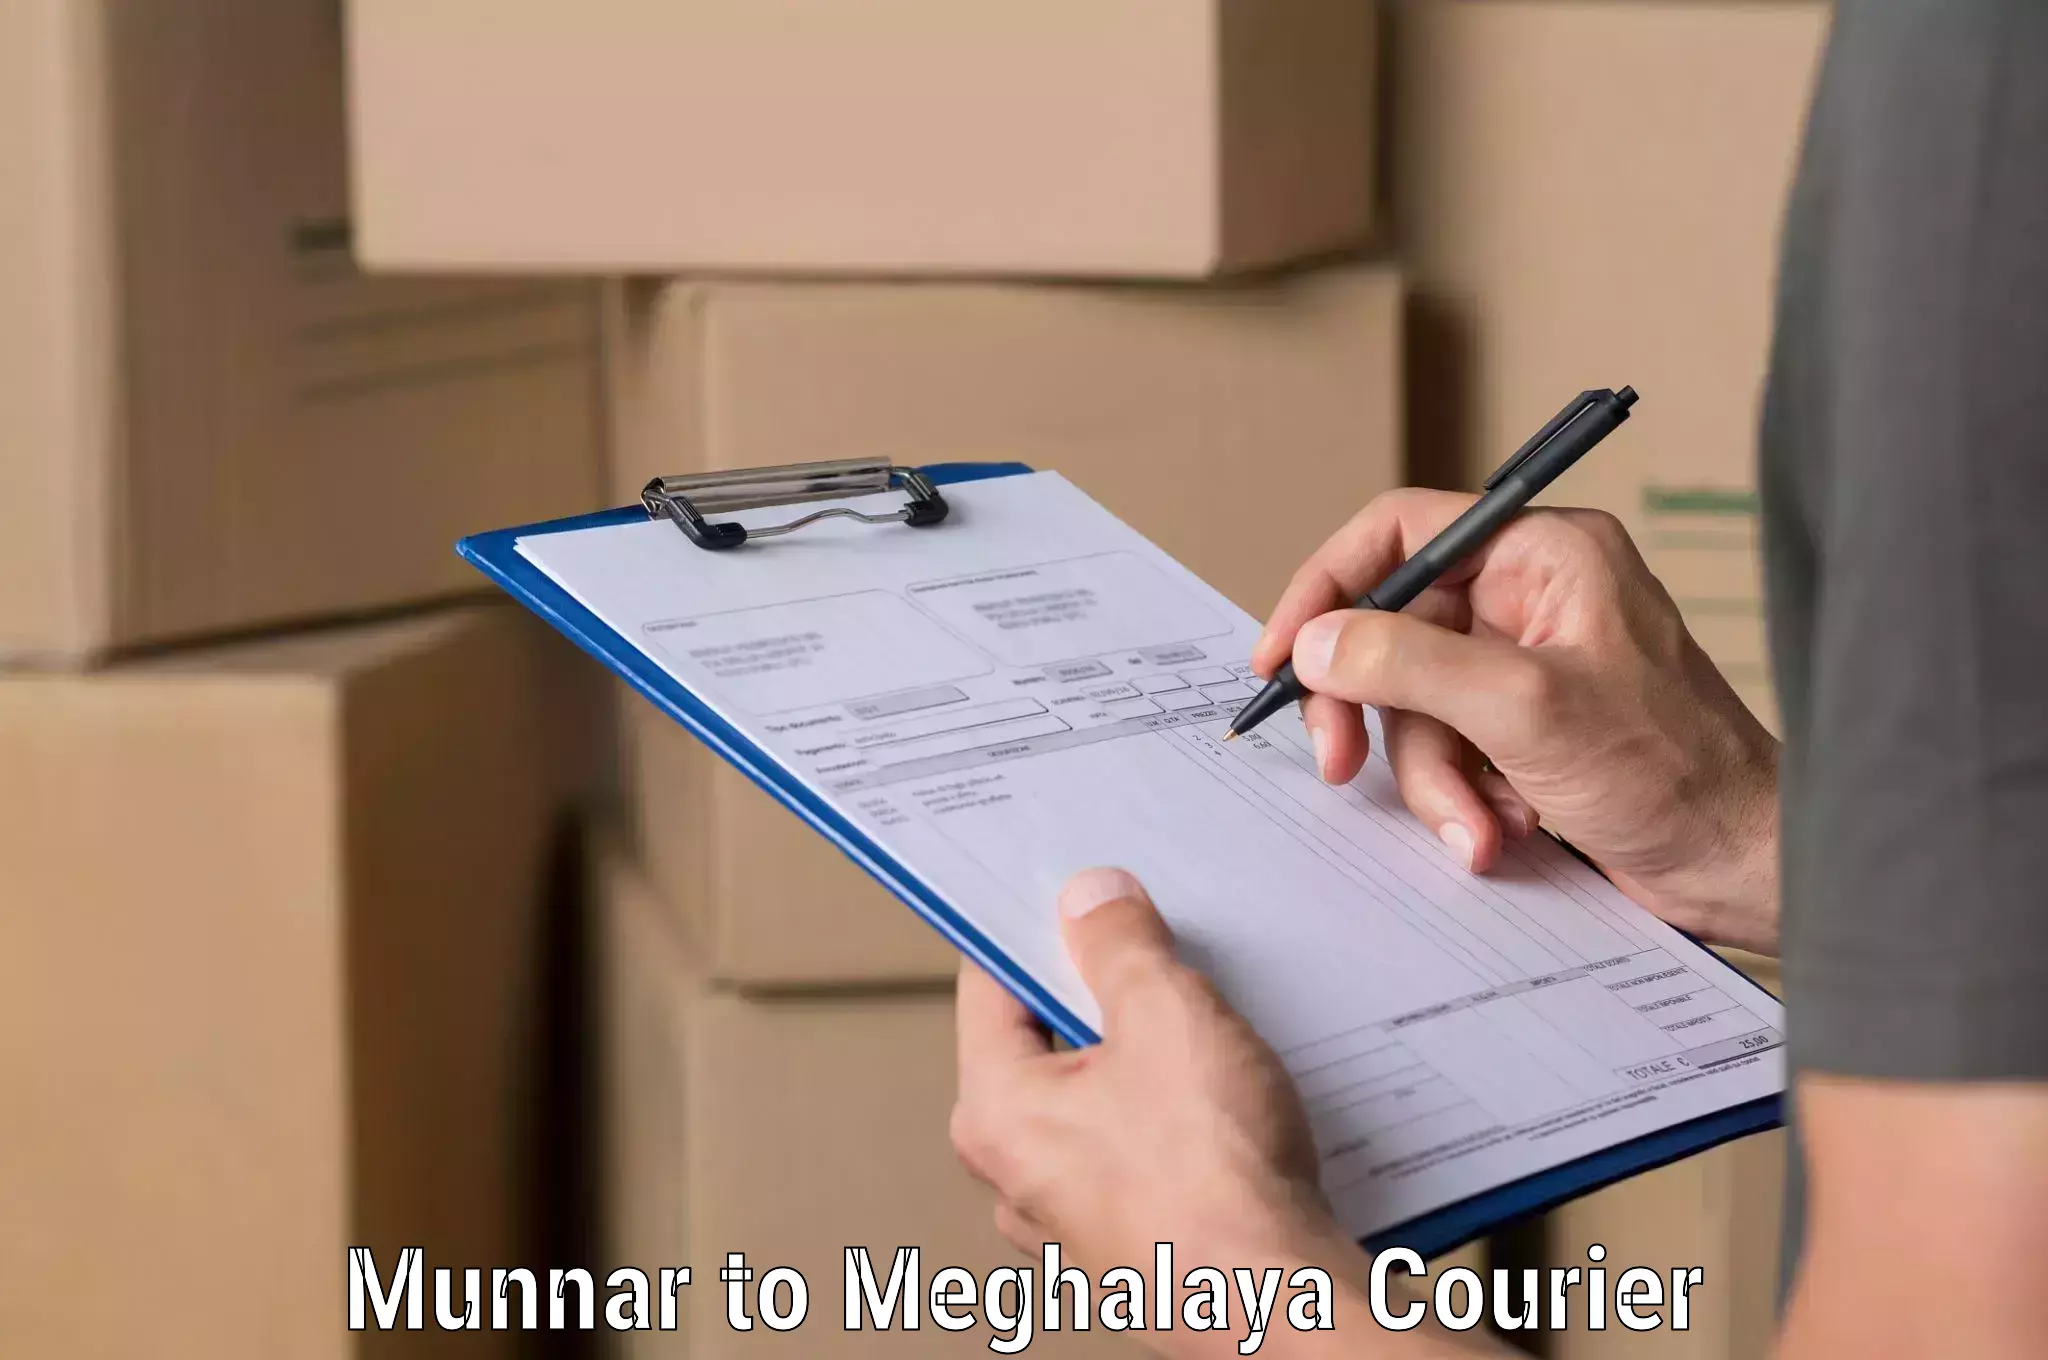 Express mail solutions Munnar to Shillong